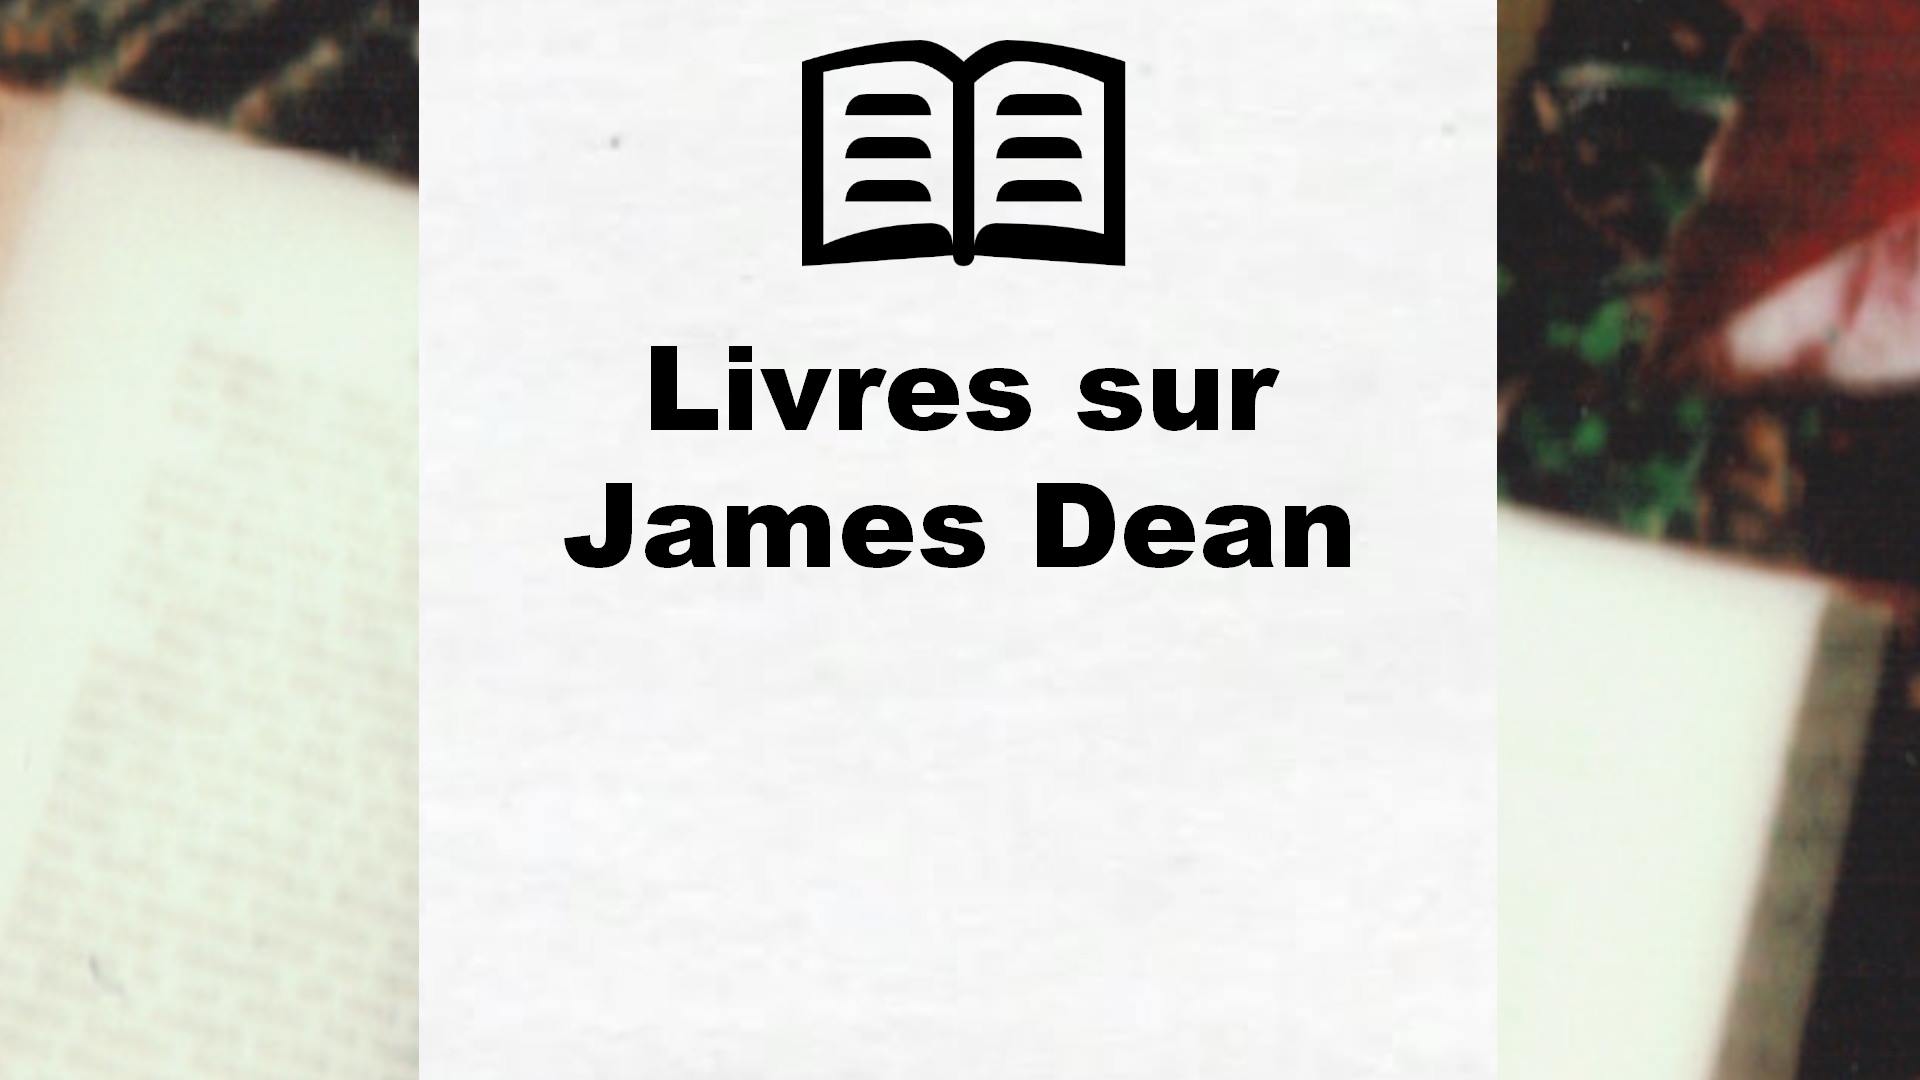 Livres sur James Dean